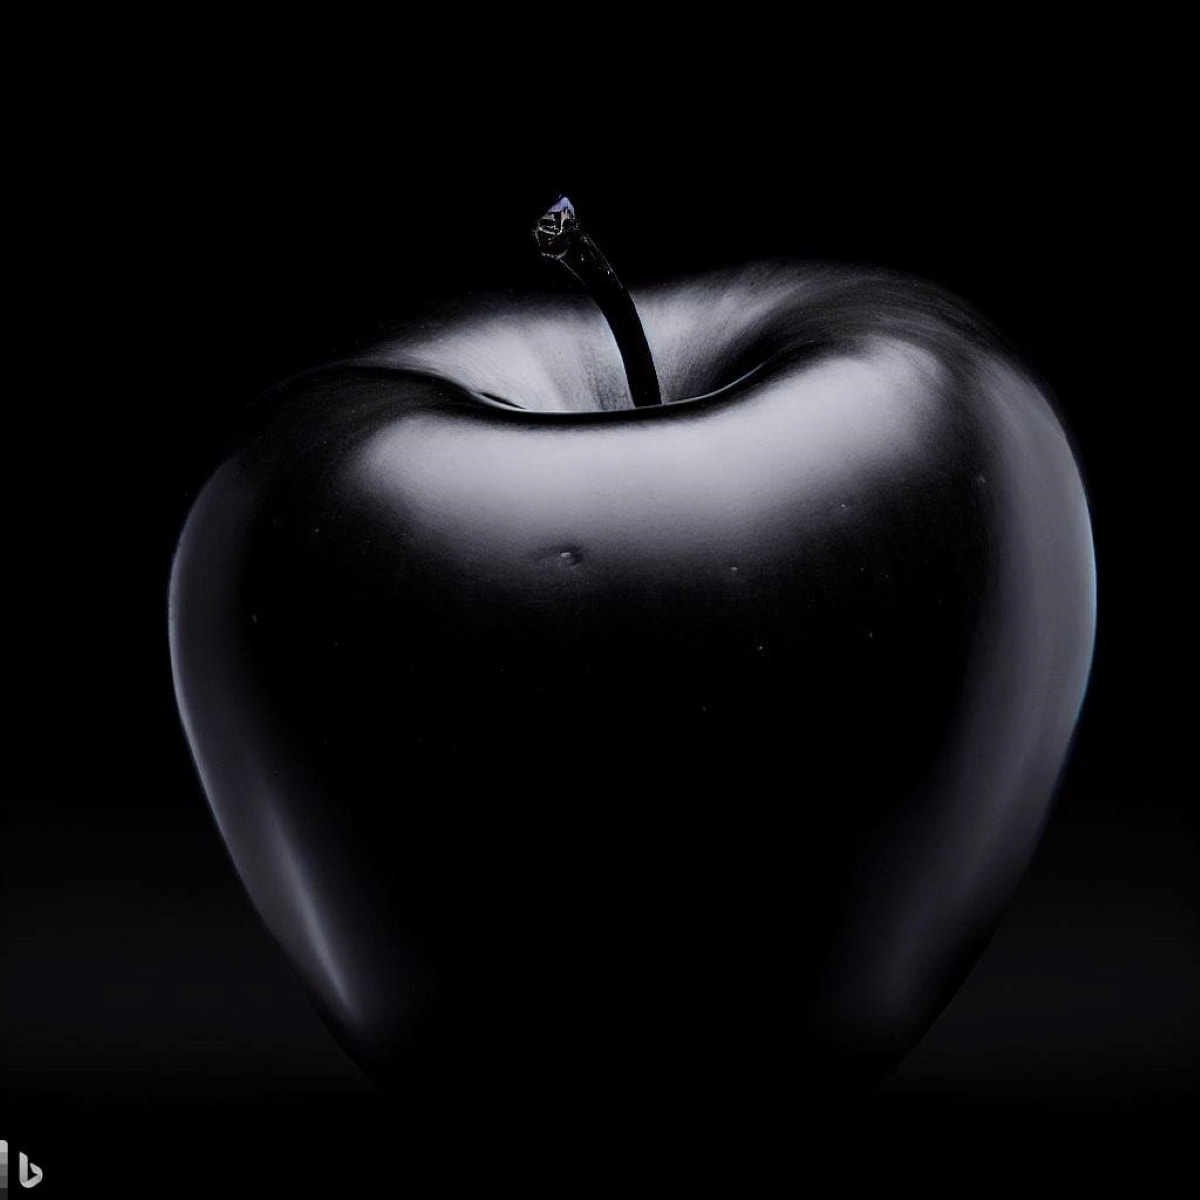 Black Diamond Apple